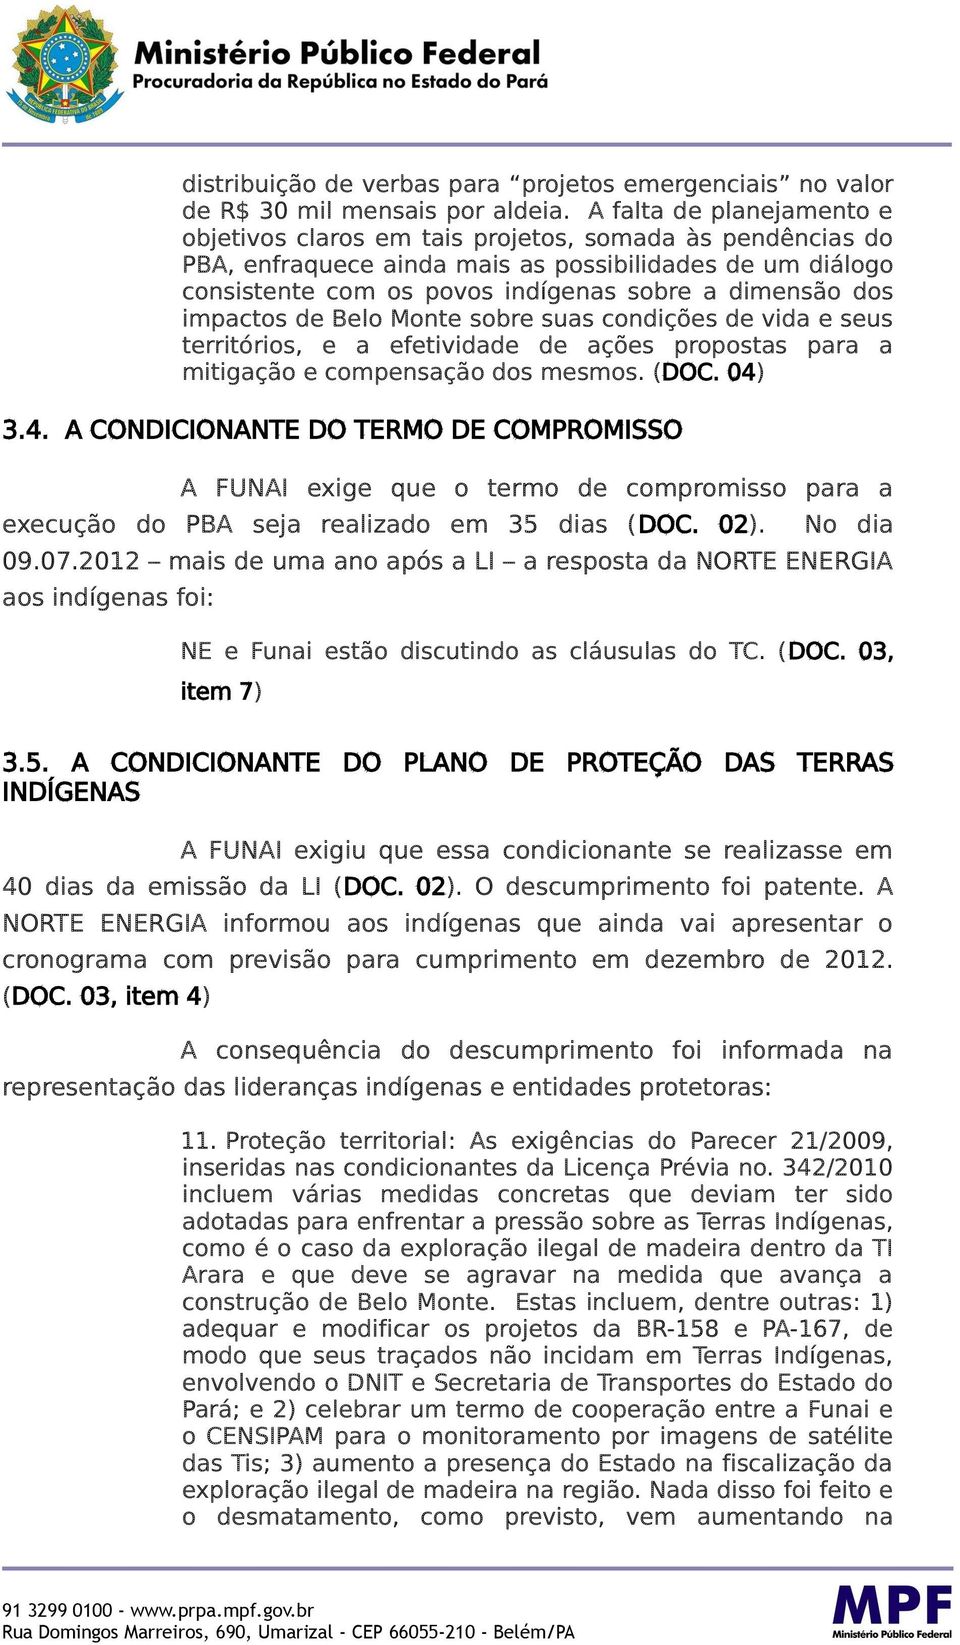 impactos de Belo Monte sobre suas condições de vida e seus territórios, e a efetividade de ações propostas para a mitigação e compensação dos mesmos. (DOC. 04)